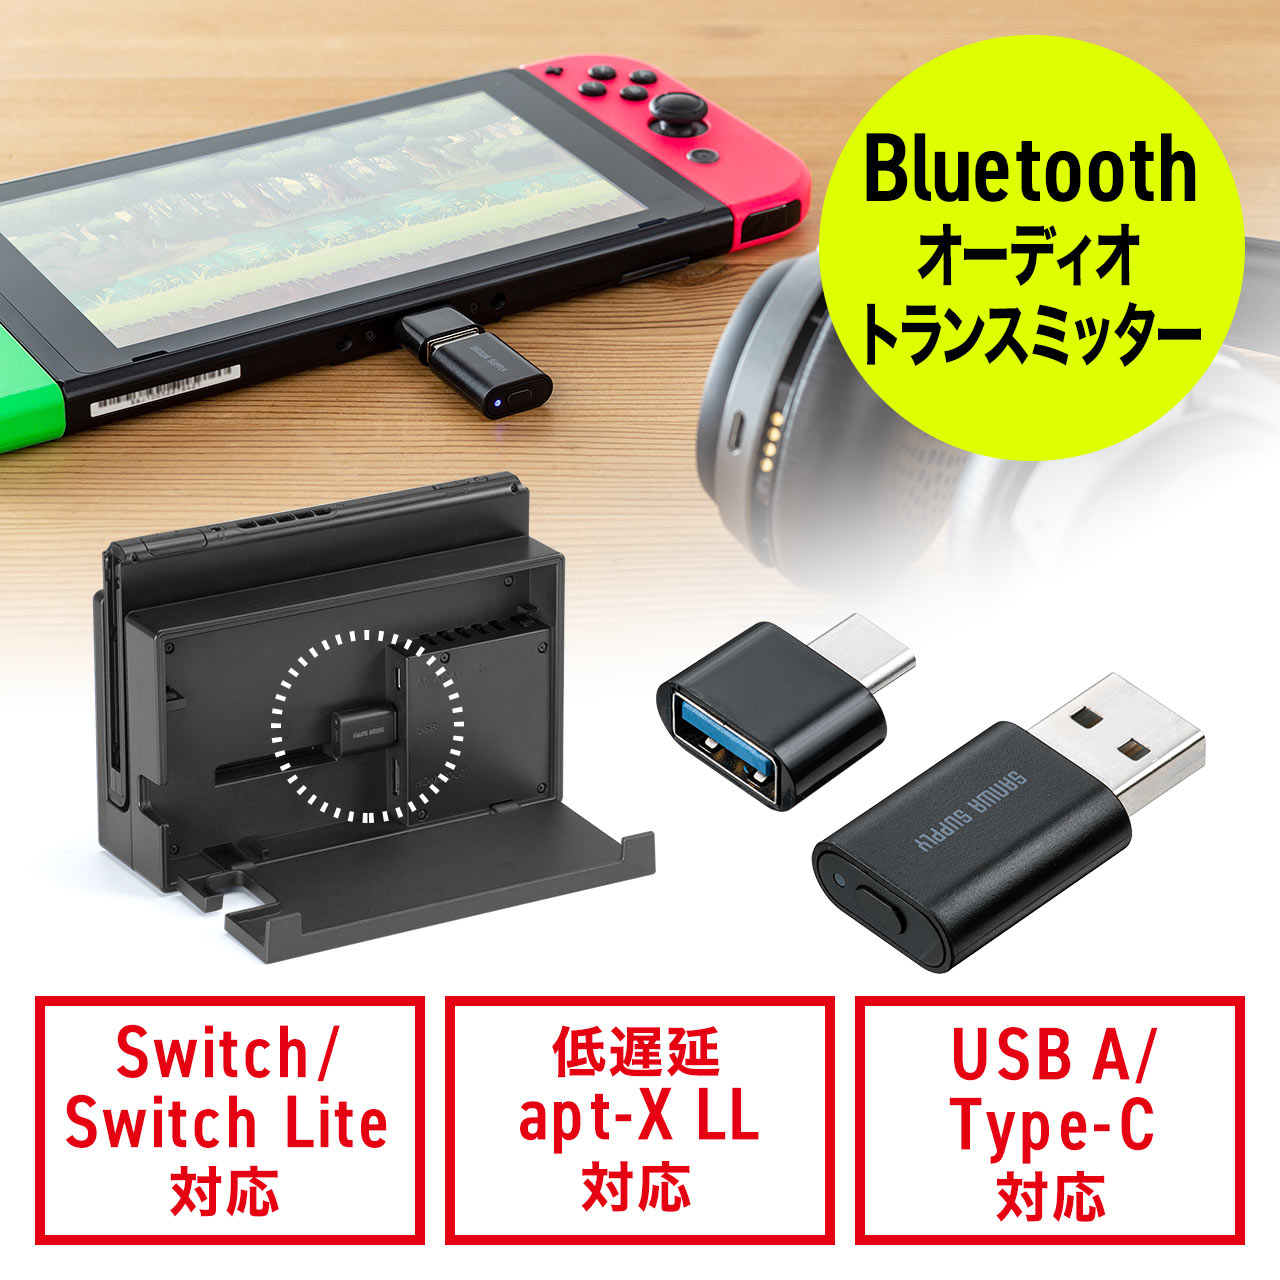 Bluetooth オーディオトランスミッター Nintendo Switch/Lite/有機EL/PS4/PS5/対応 USB  Type-C変換アダプタ付き 低遅延 apt-X LL ワイヤレス送信機 400-BTAD009の販売商品 通販ならサンワダイレクト